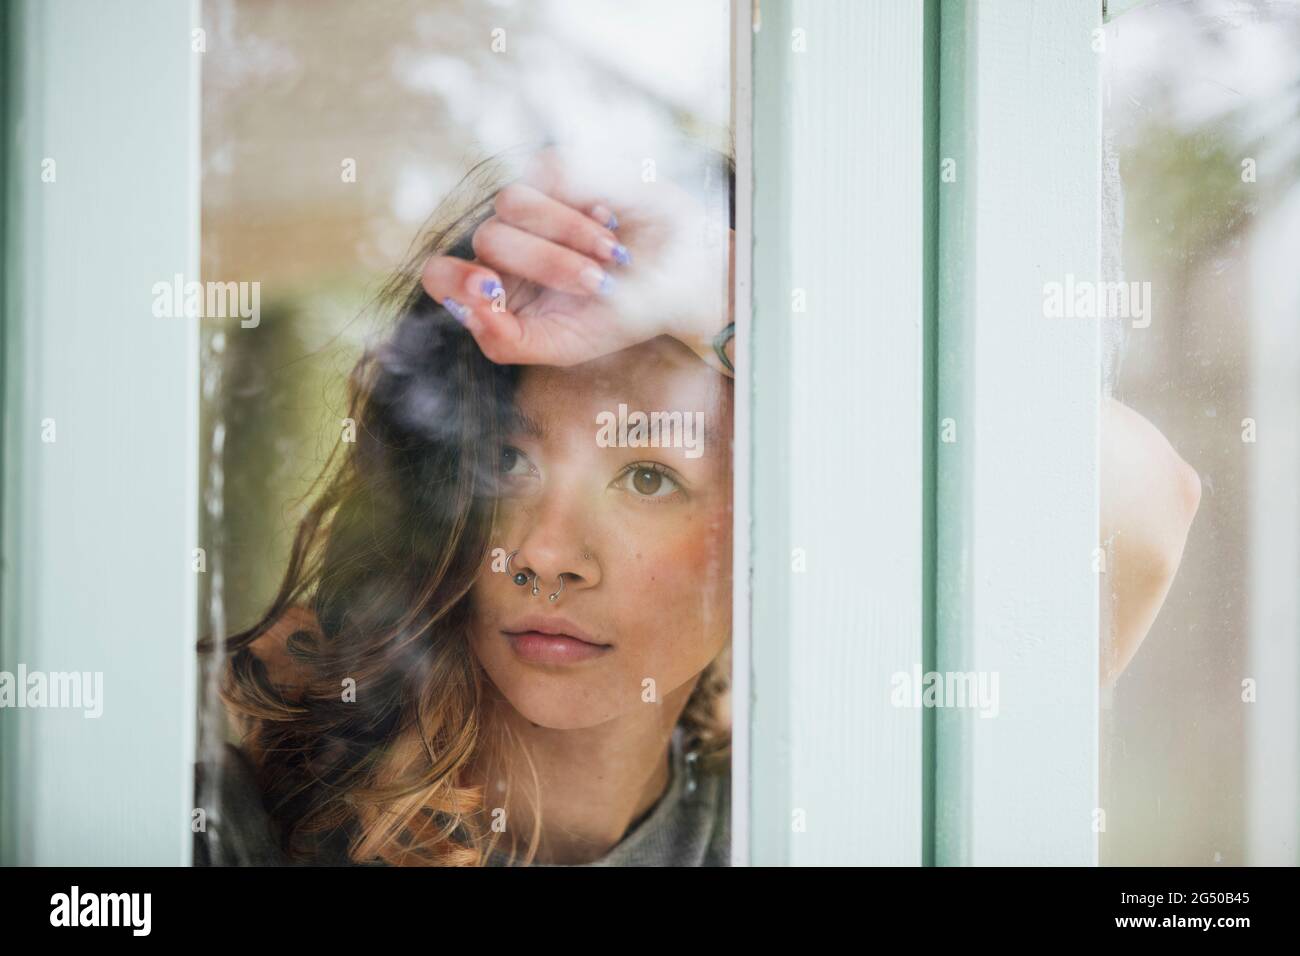 Una giovane donna, fotografata attraverso la finestra. Sta poggiando sul braccio sollevato contro la finestra. Foto Stock